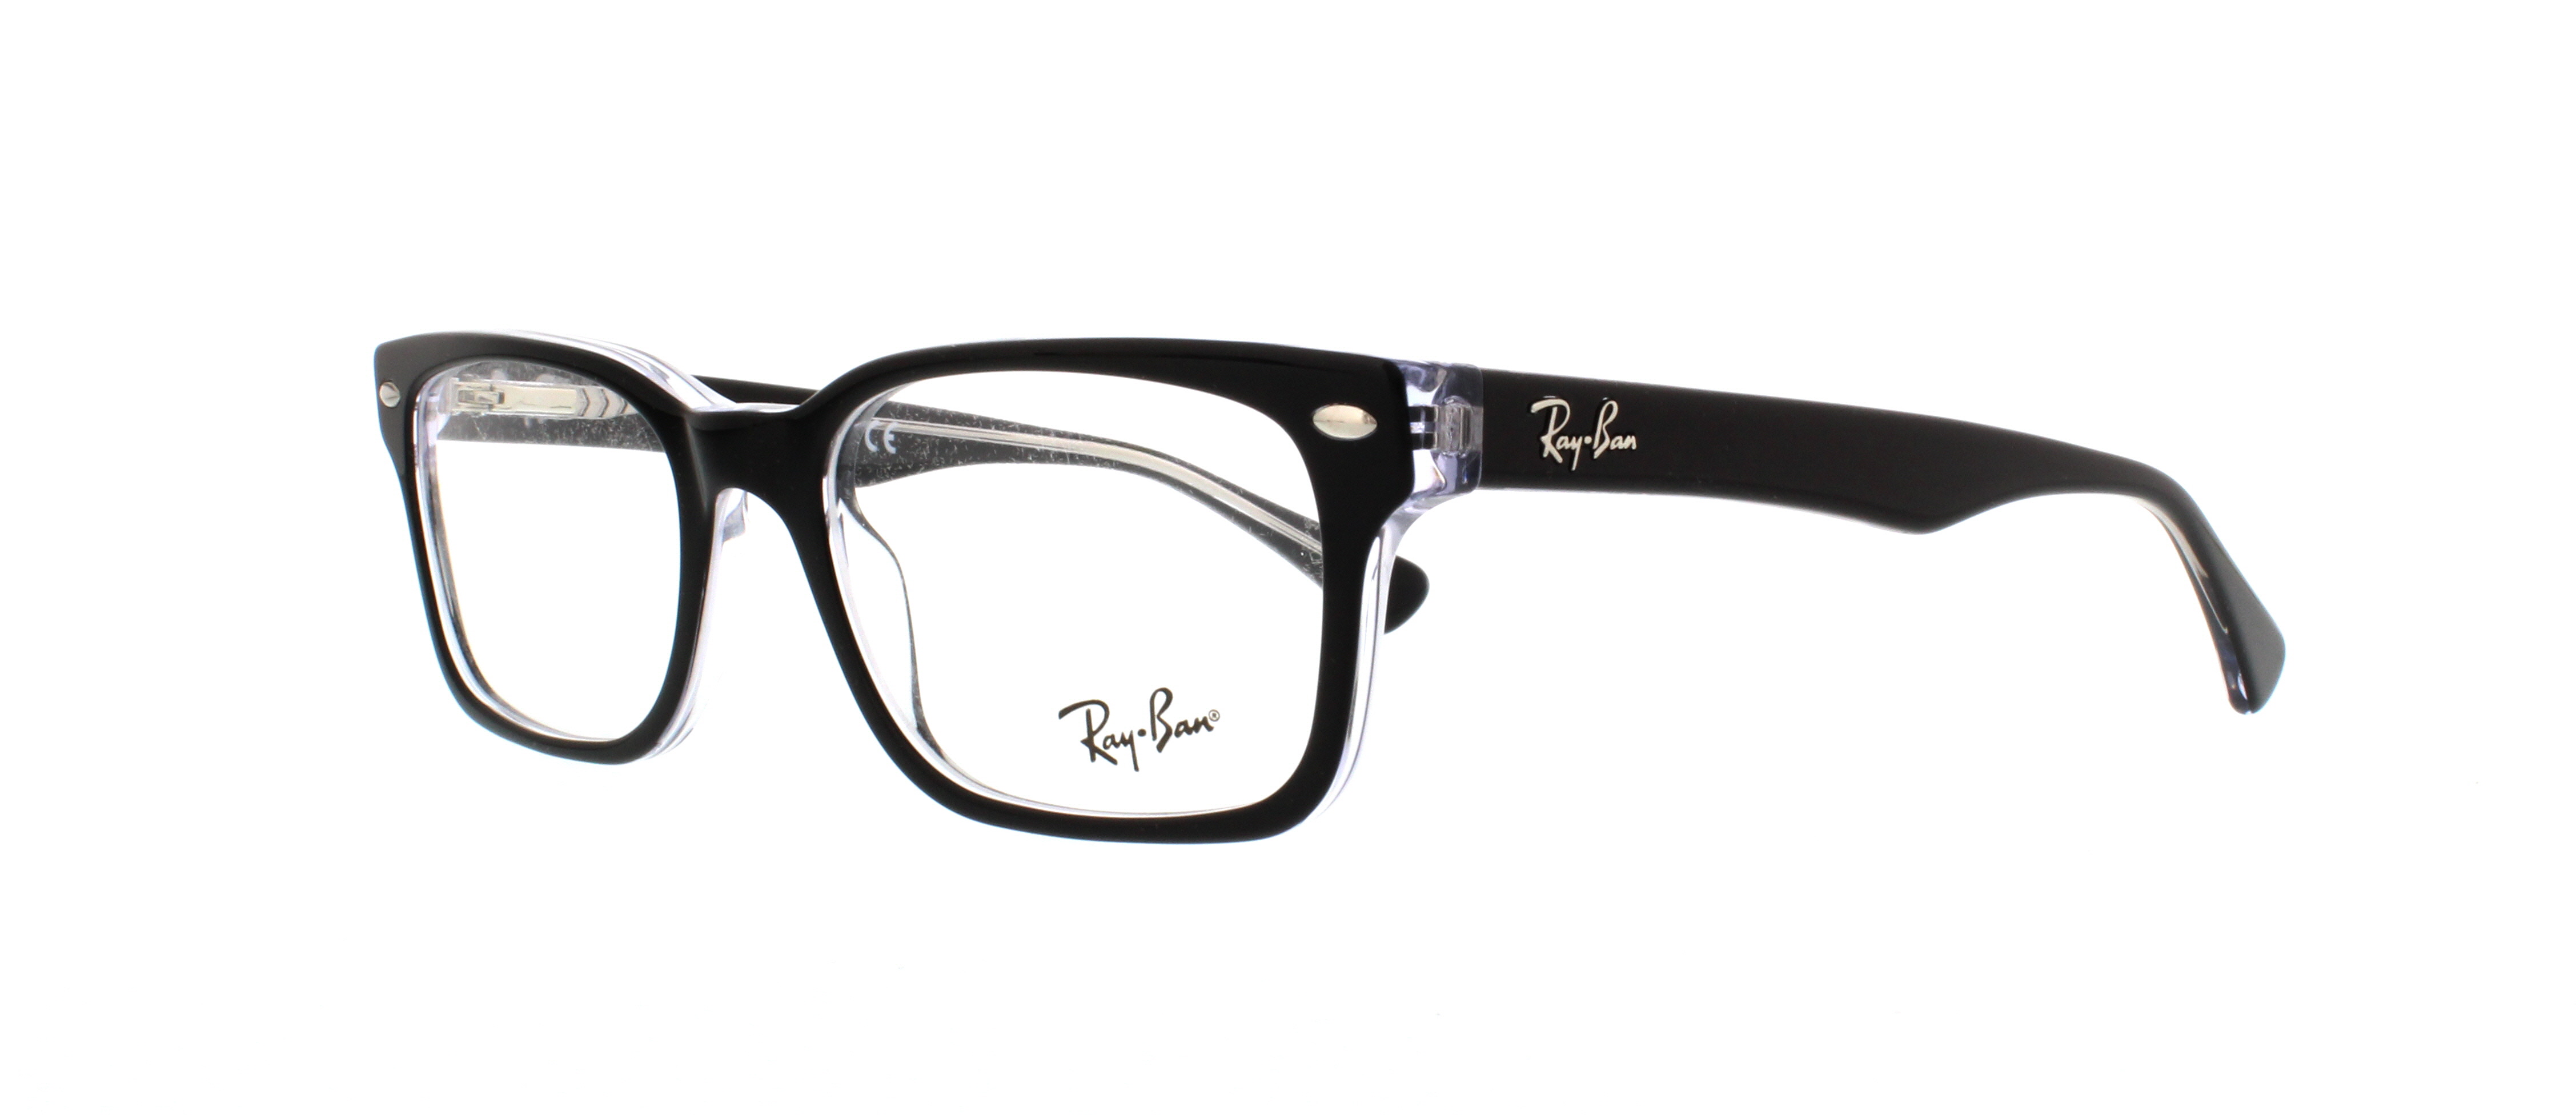 Designer Frames Outlet. Ray Ban Eyeglasses RX5286